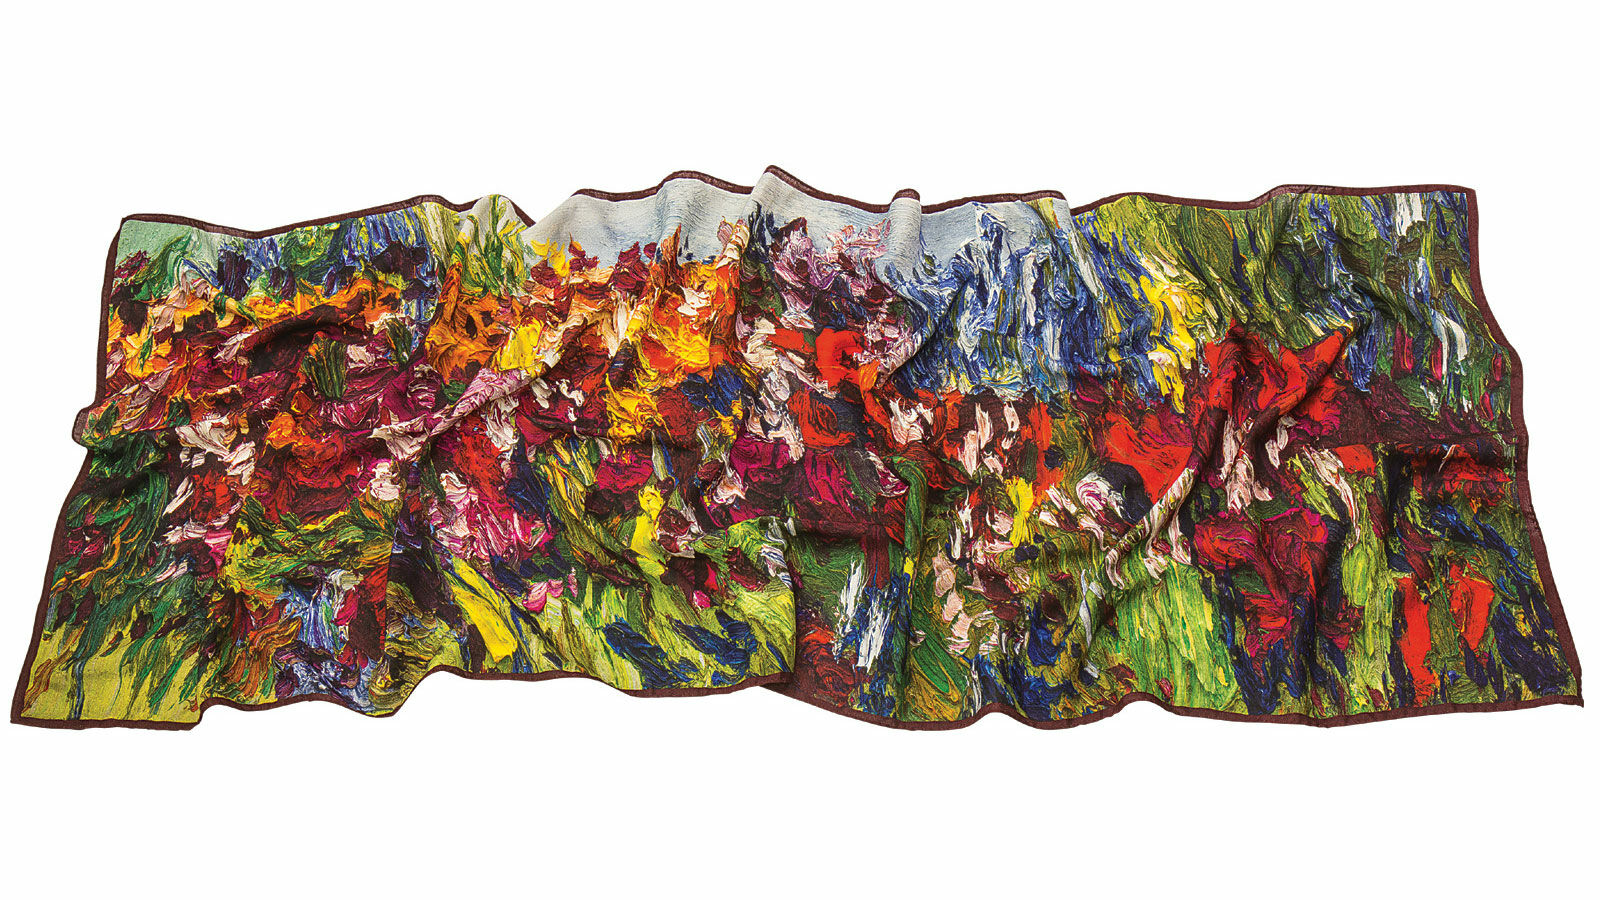 Echarpe "Flower Meadow" (pré fleuri) von Ben Kamili